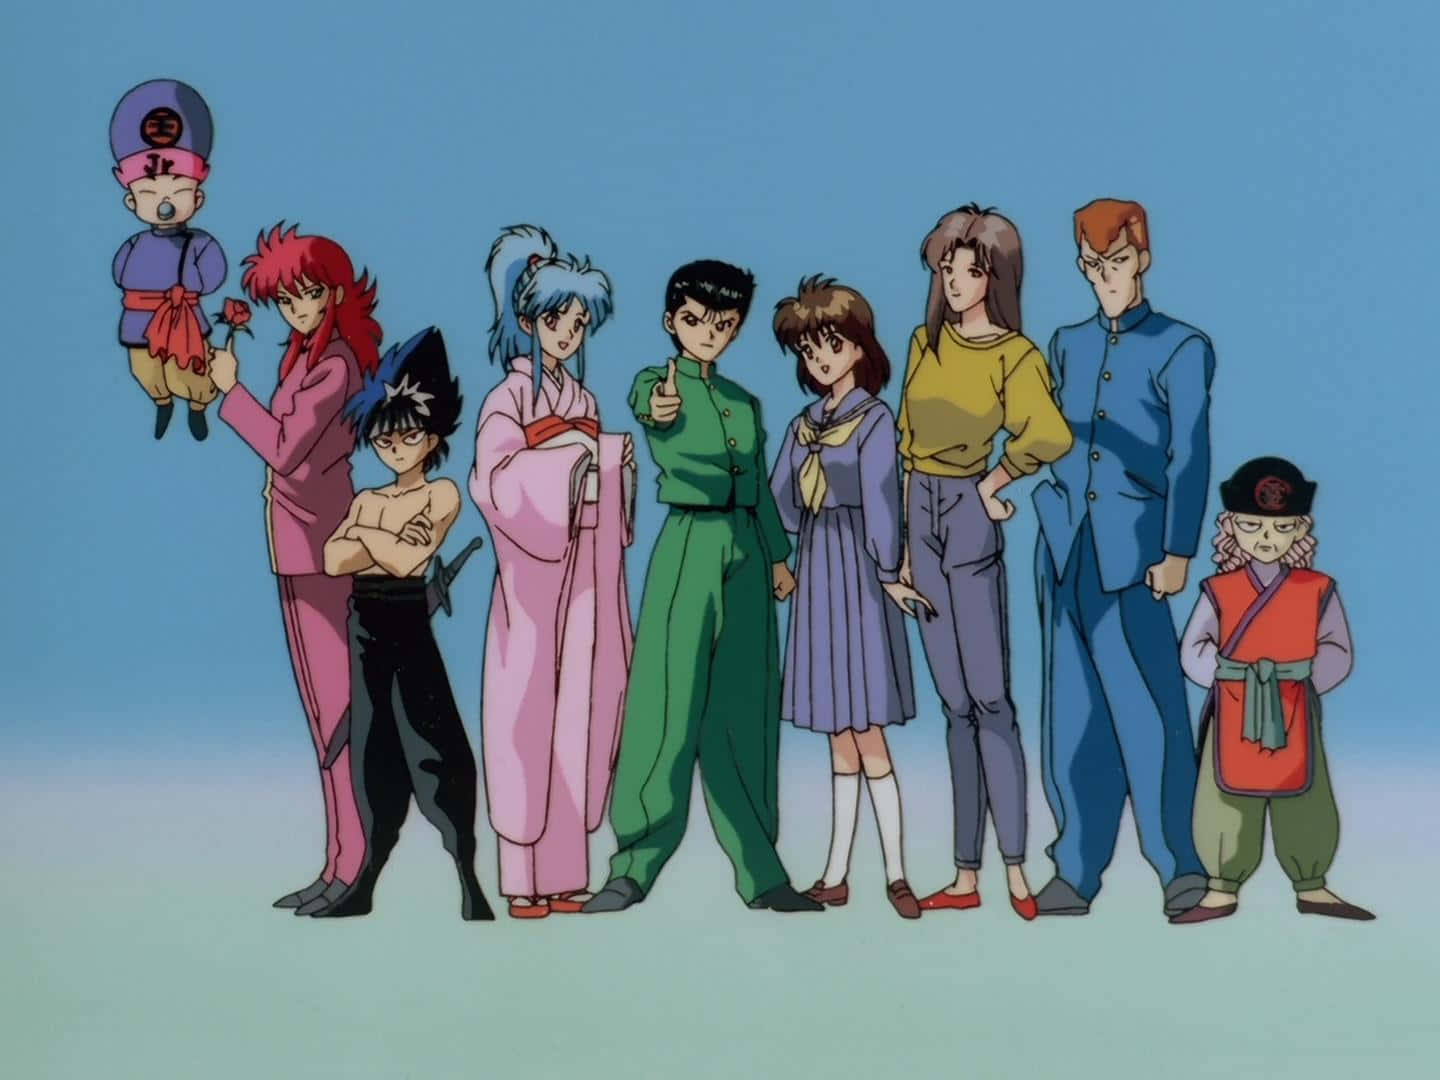 Einegruppe Von Anime-charakteren Steht Gemeinsam.